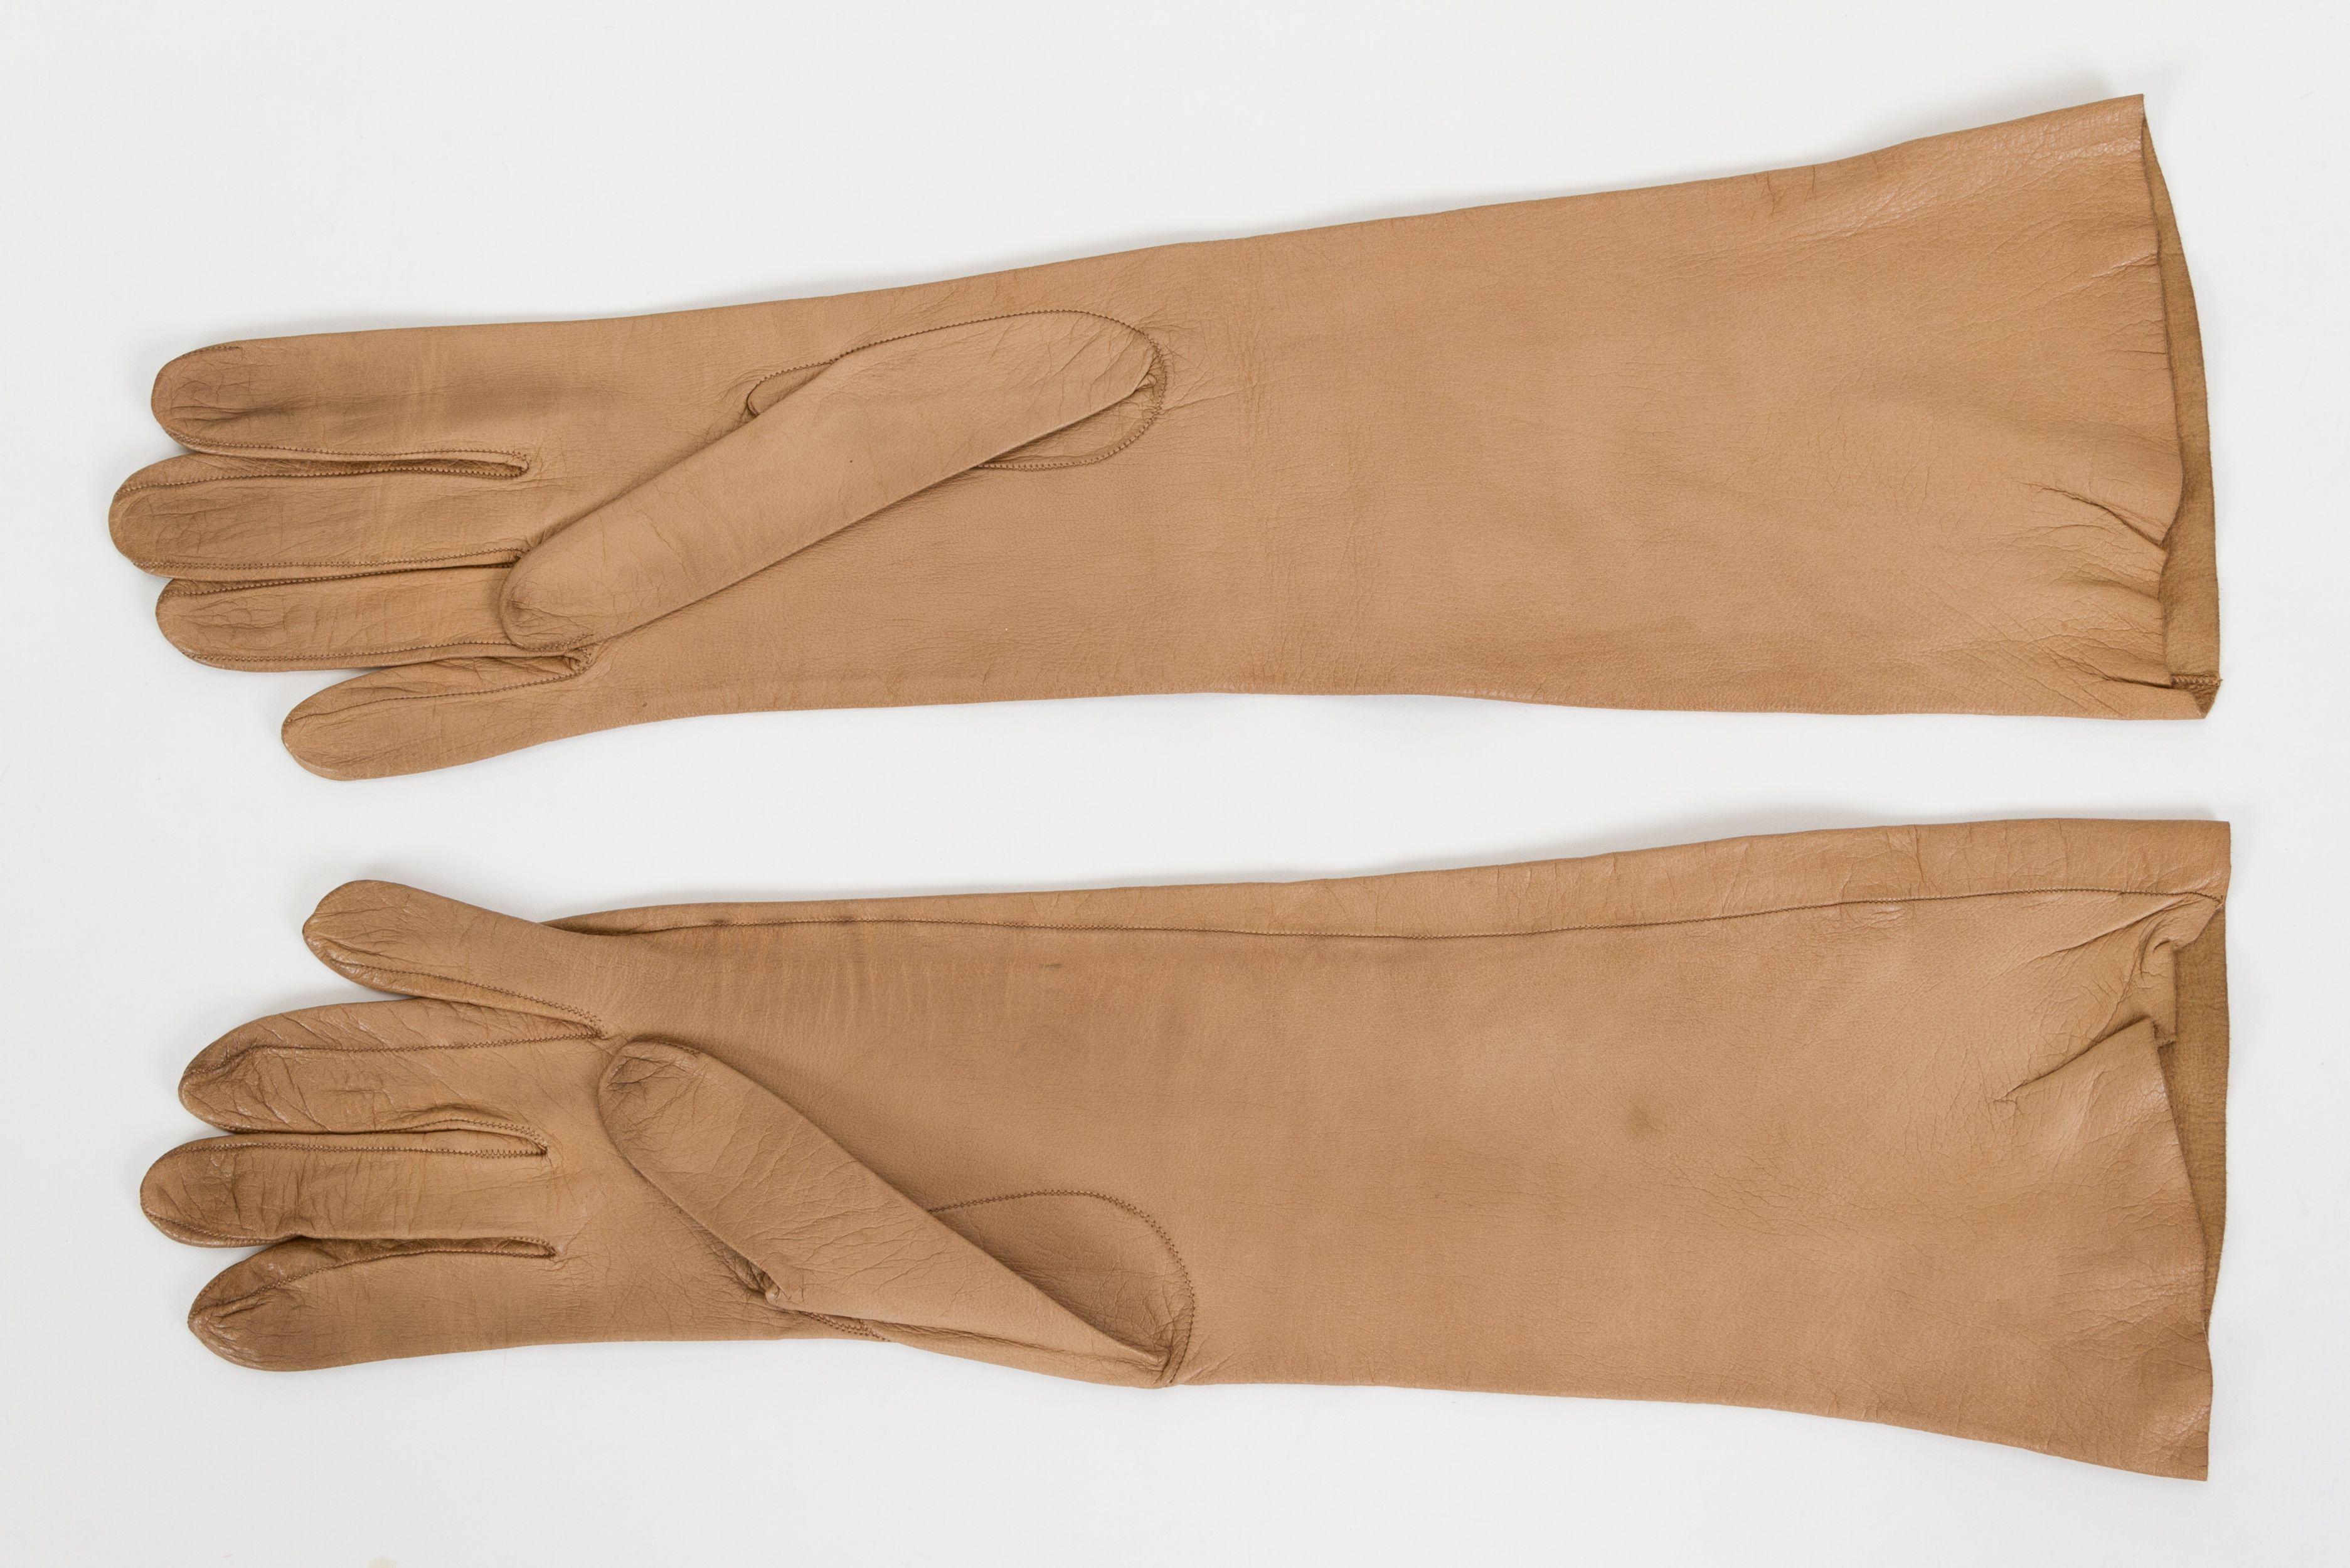 Hermès butter lambskin long women s gloves. Camel /beige tone. Size 6. Show medium wear.